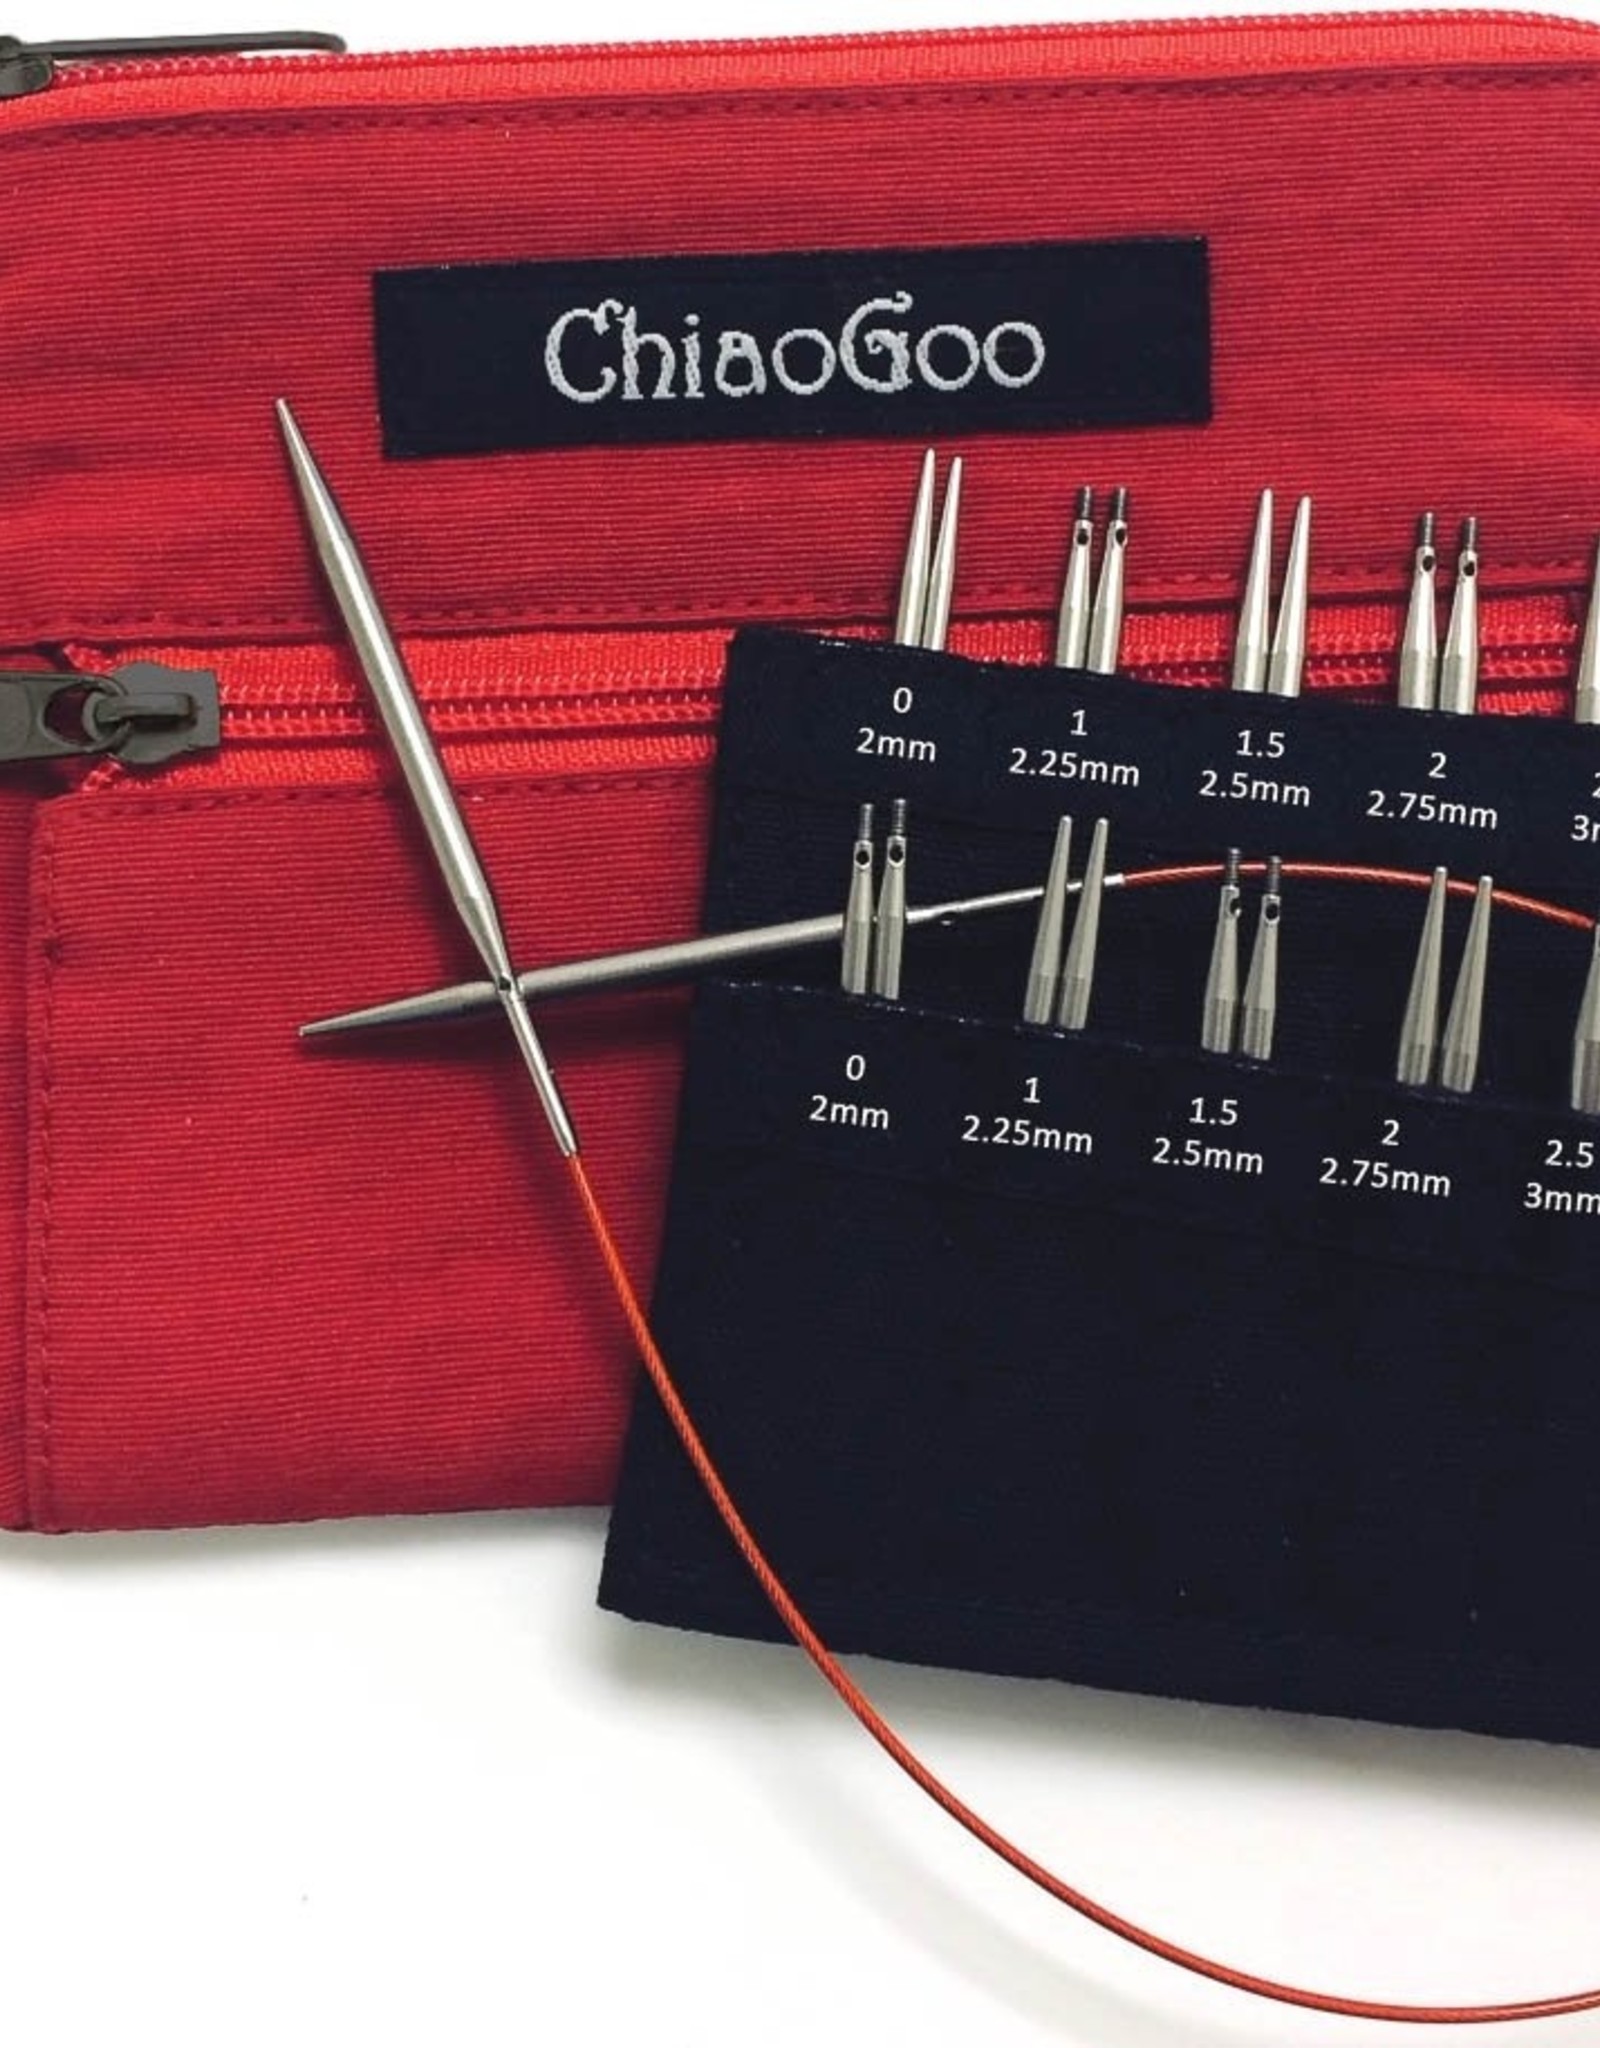 ChiaoGoo Twist Shorties Interchangeable Needle Sets